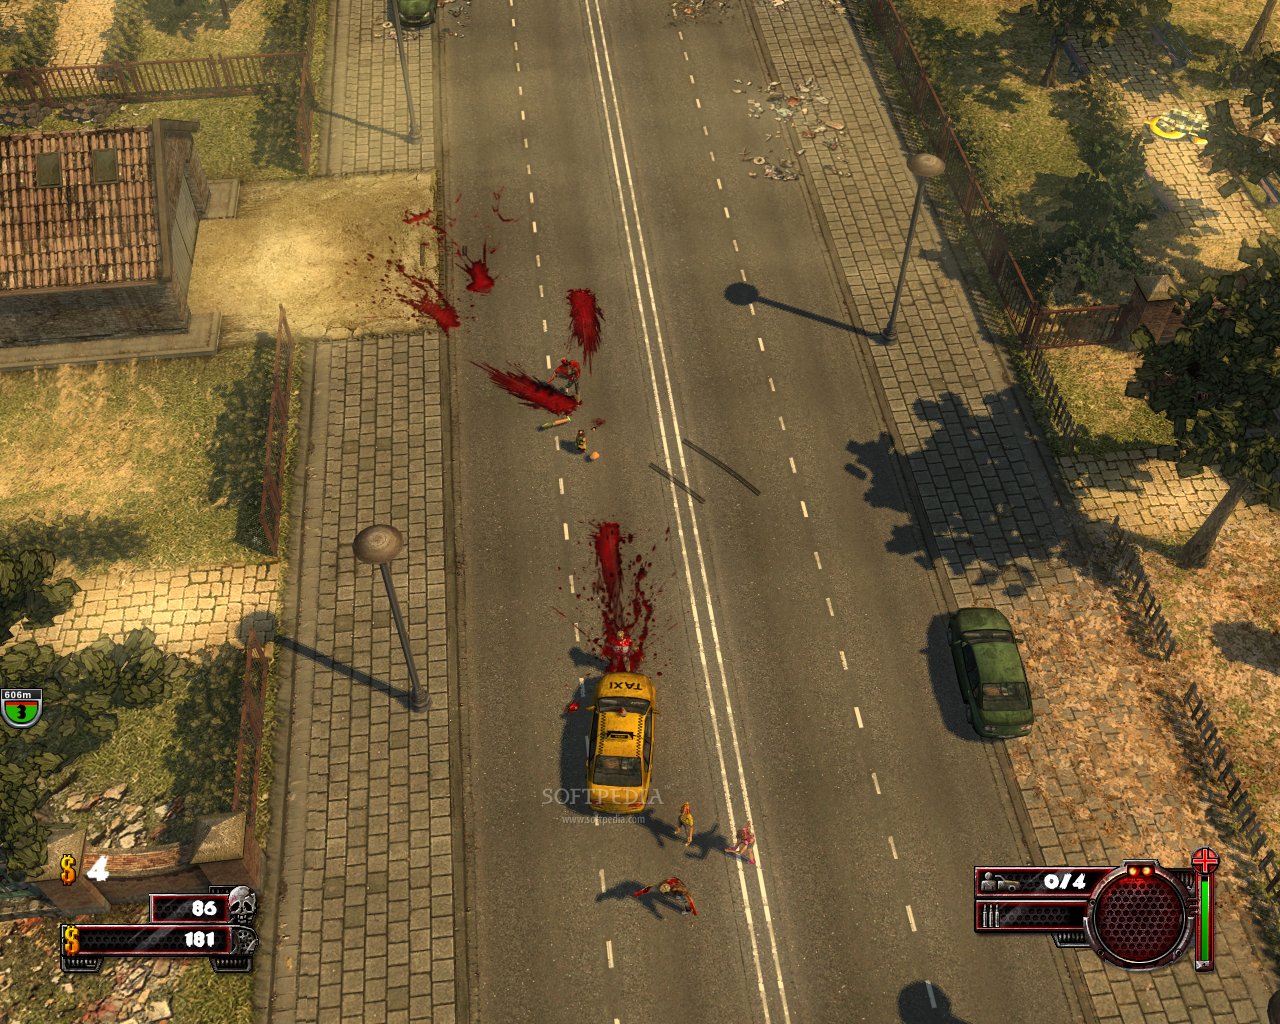 http://i1-games.softpedia-static.com/screenshots/Zombie-Driver-Taxi-Car_1.jpg